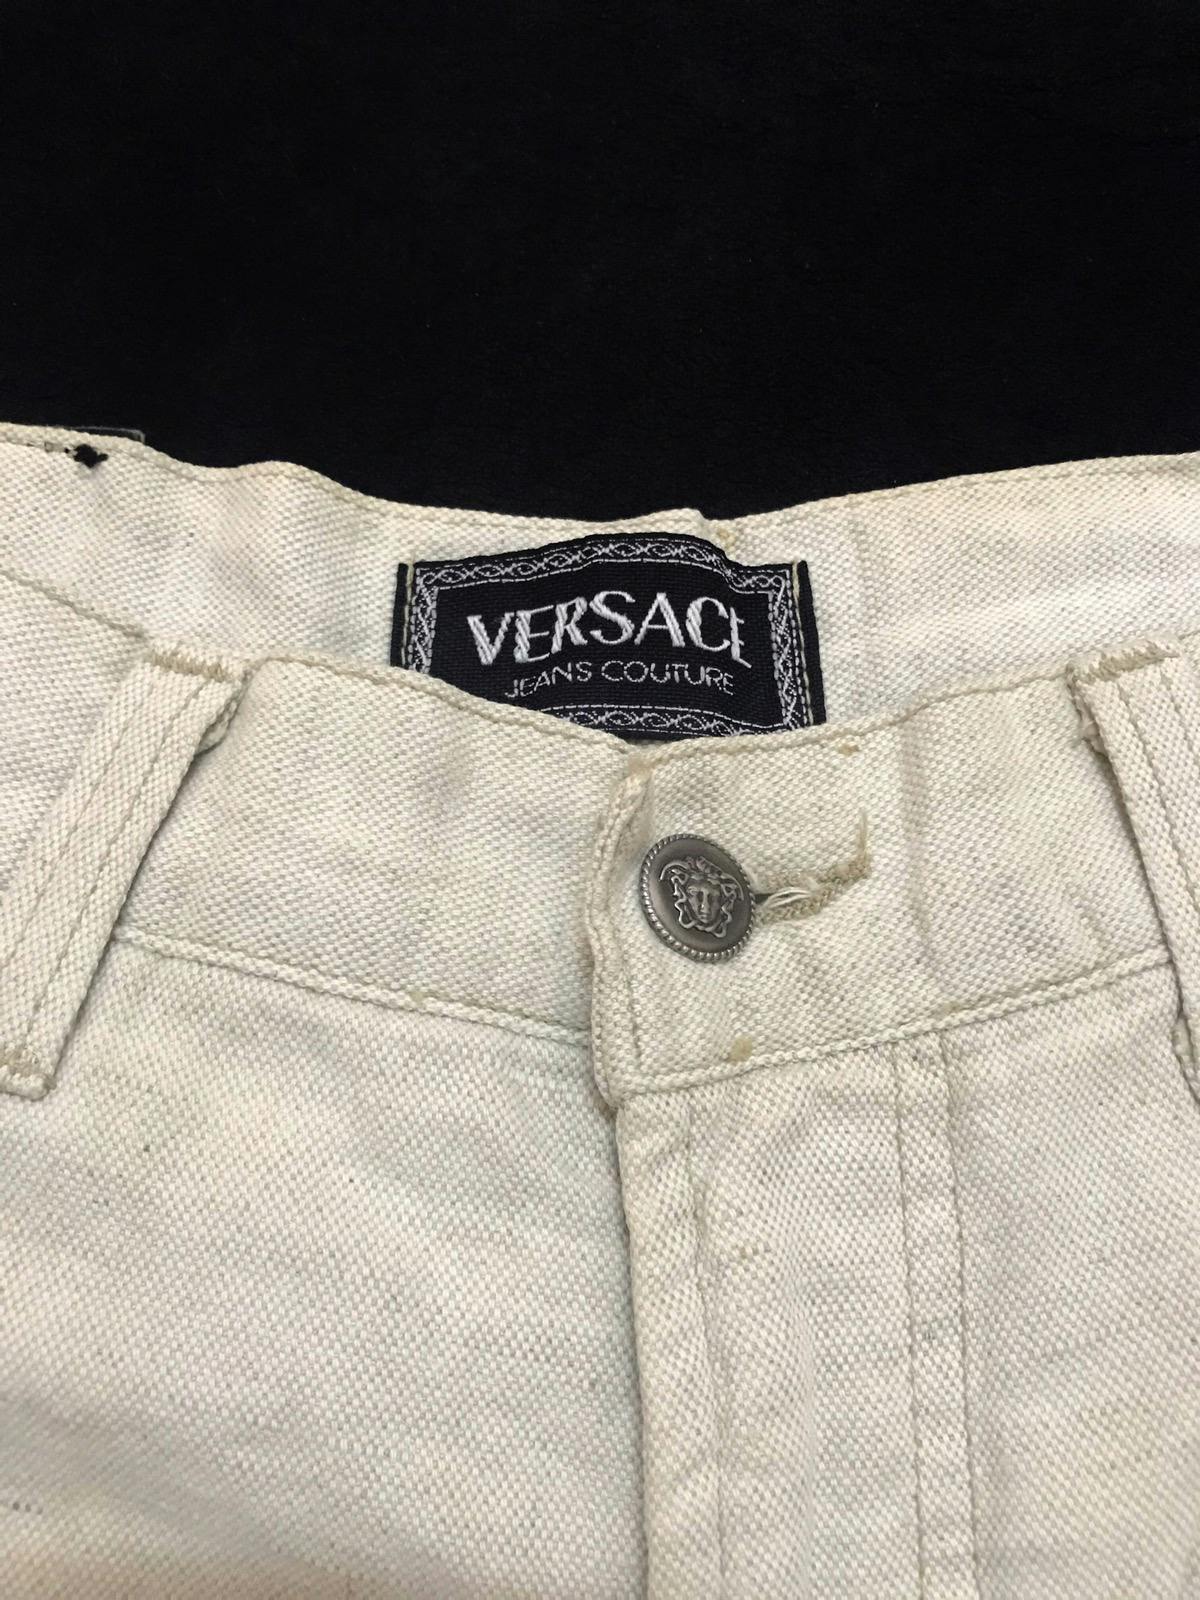 Vintage Versace Jeans Couture Pants - 4